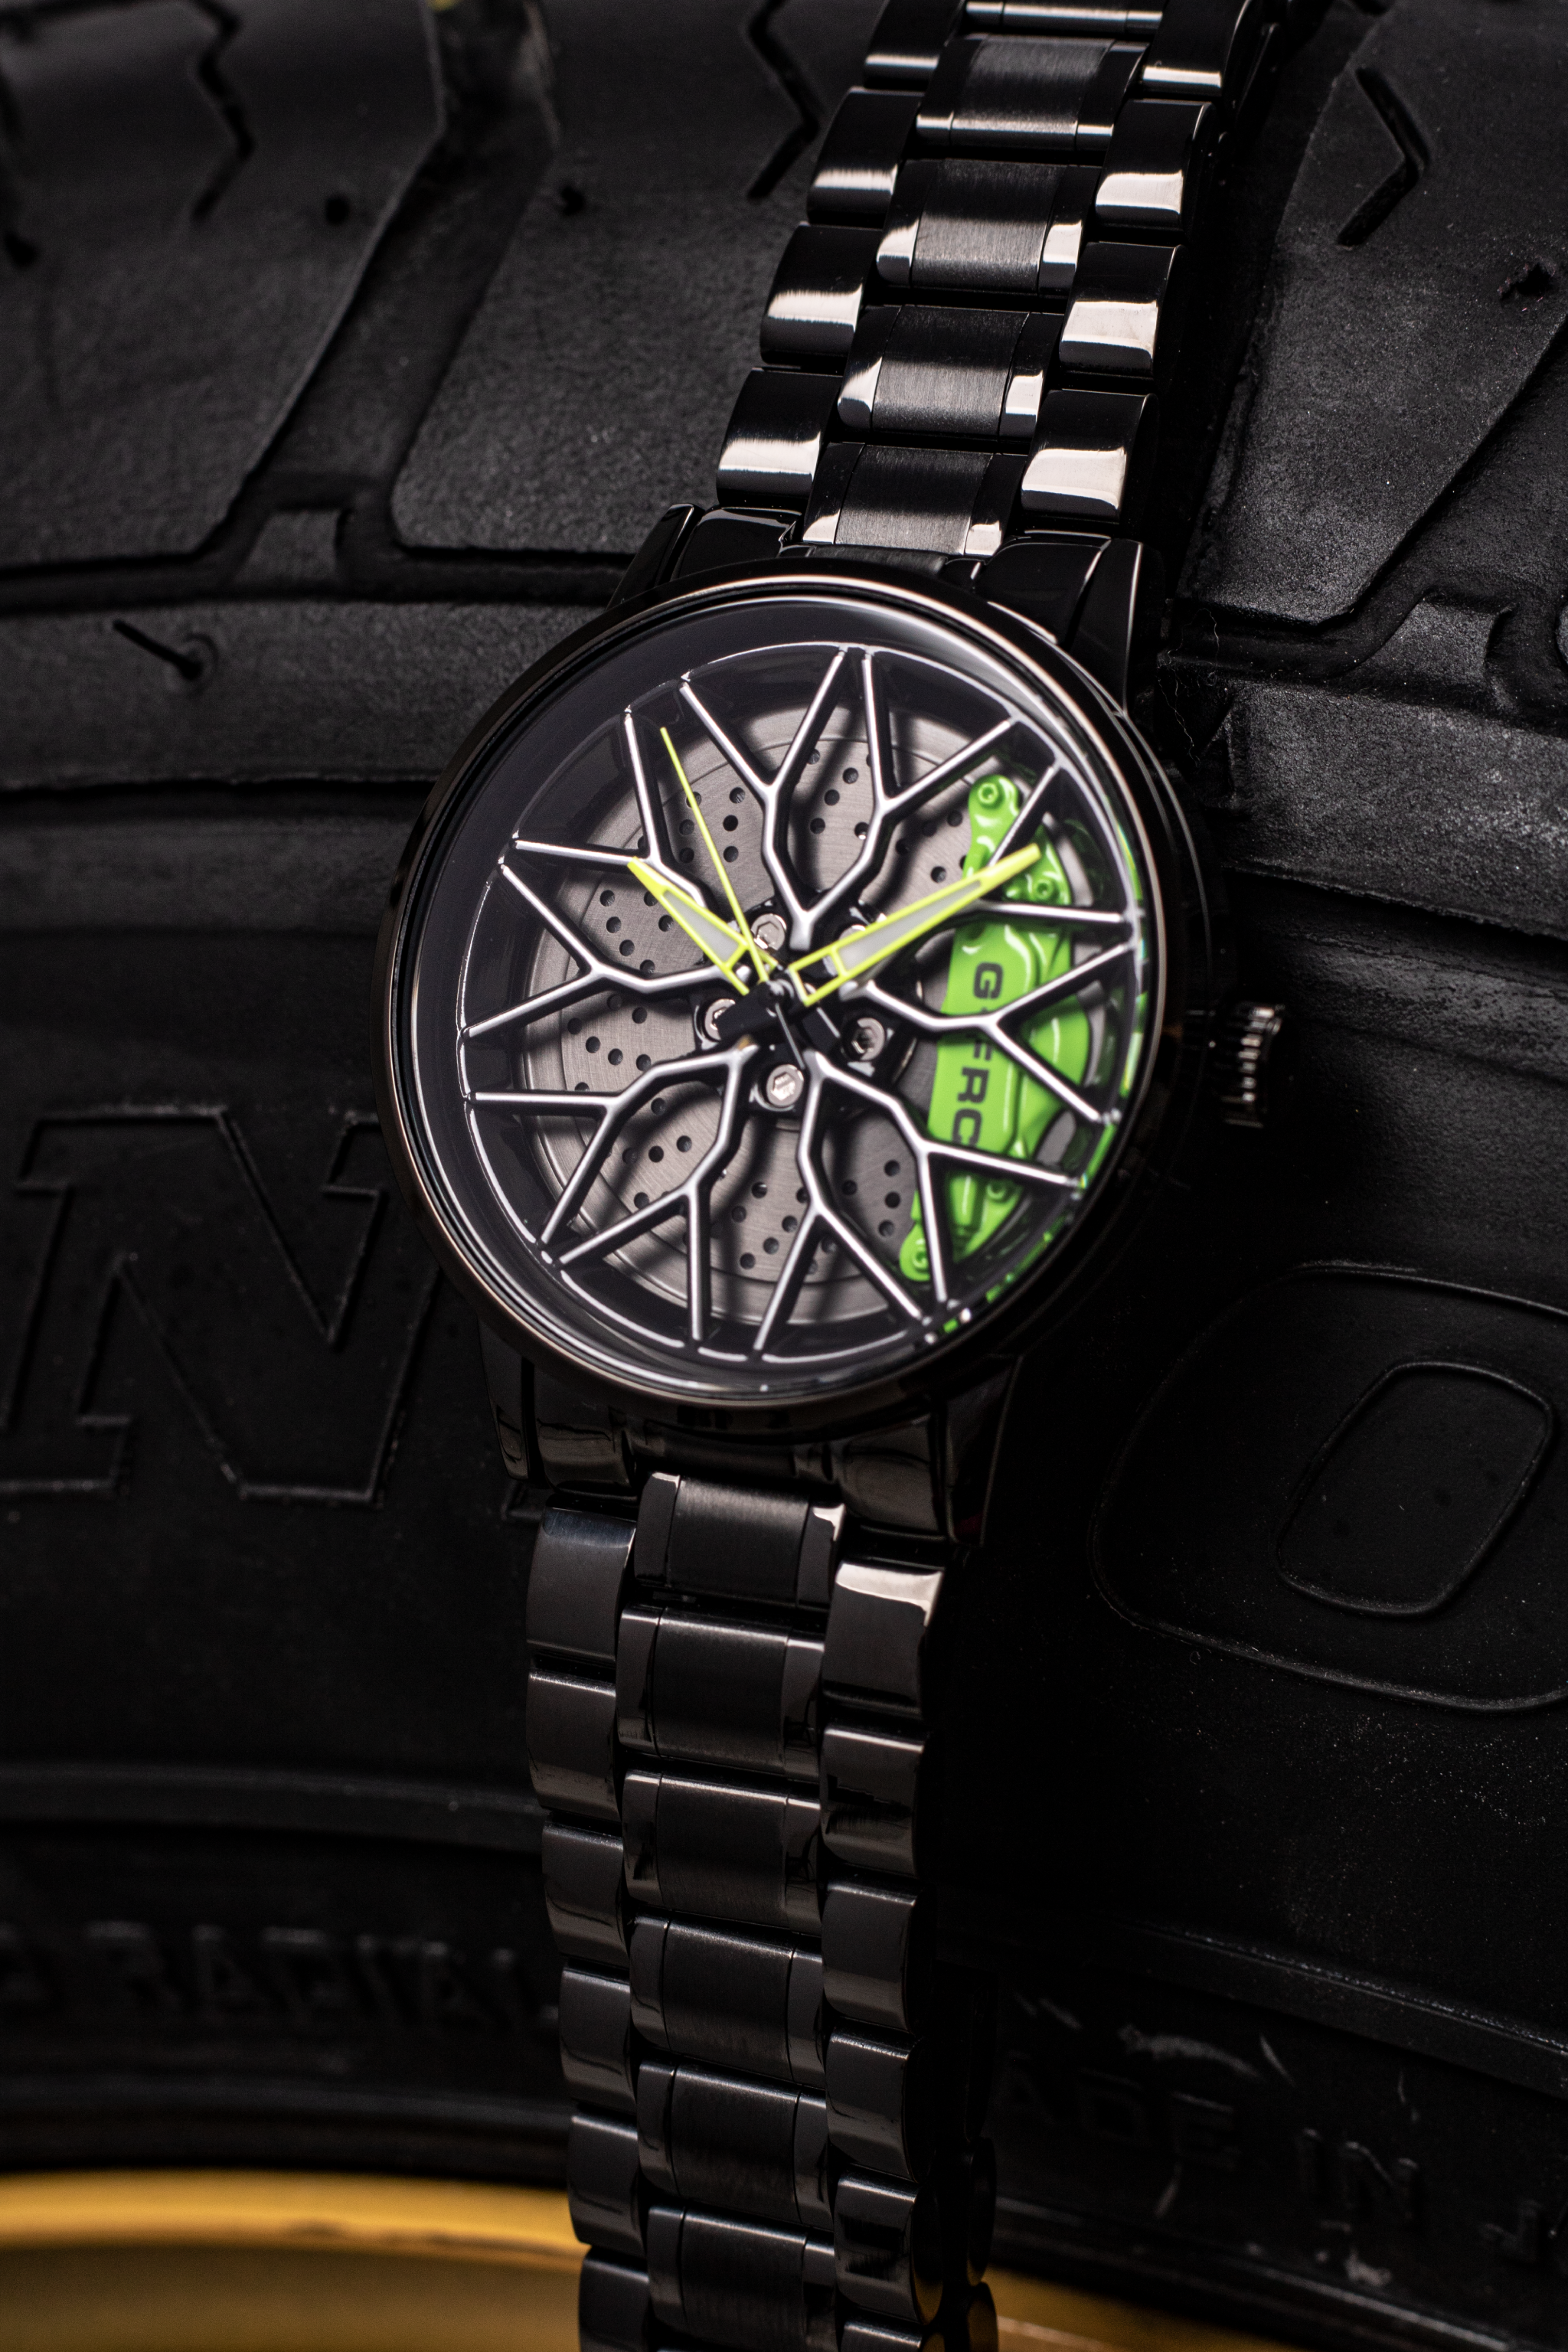 Reloj G-FORCE G1990 análogo con diseño de Rin para hombre